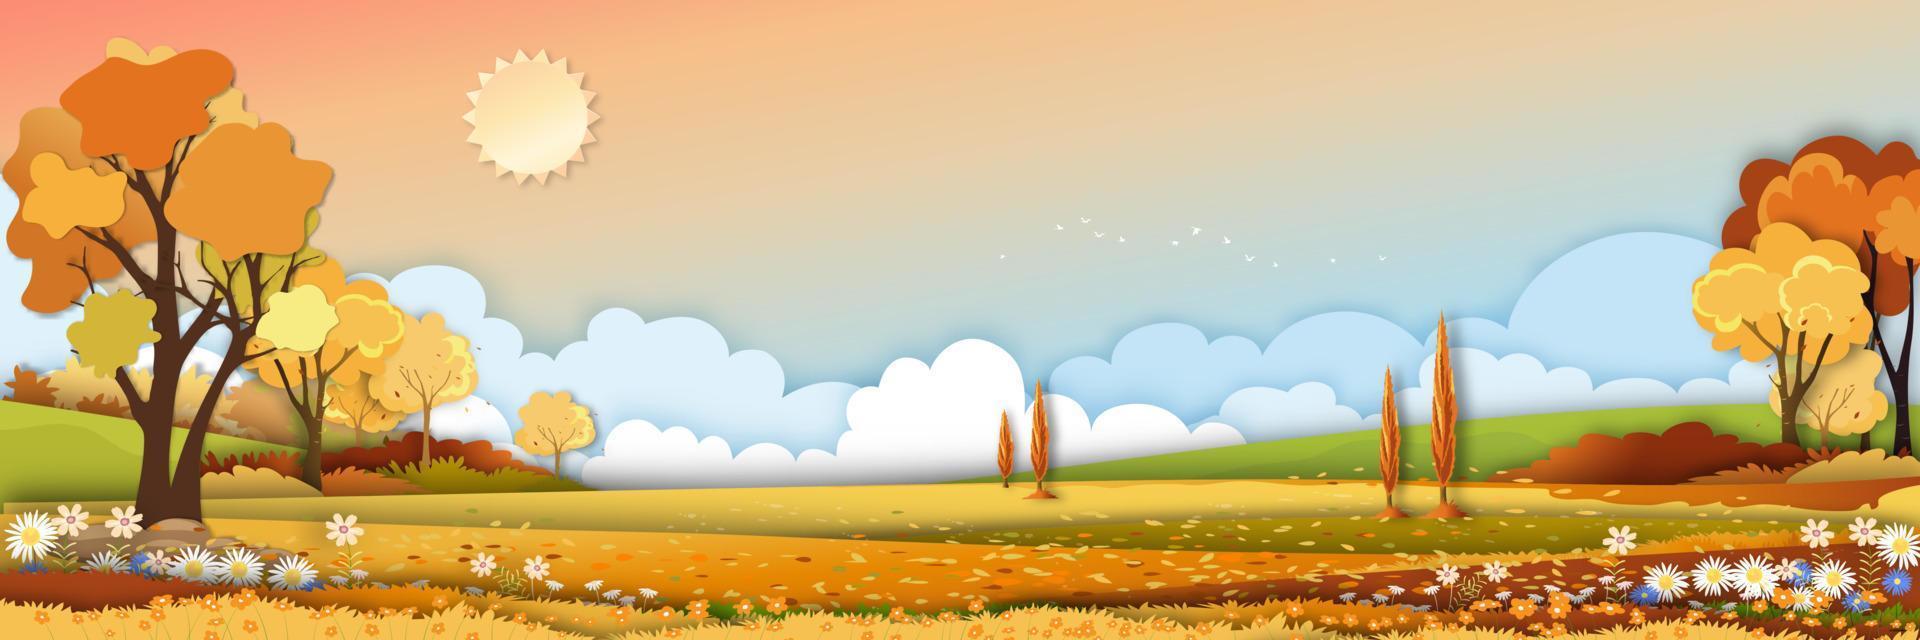 höstens landsbygdslandskap i kvällsljus med solnedgång, gul, orange himmelbakgrund, vektorpano tecknad höstsäsong på landsbygden med skogsträd och gräsfält med soluppgång, naturlig banderoll i bakgrunden vektor